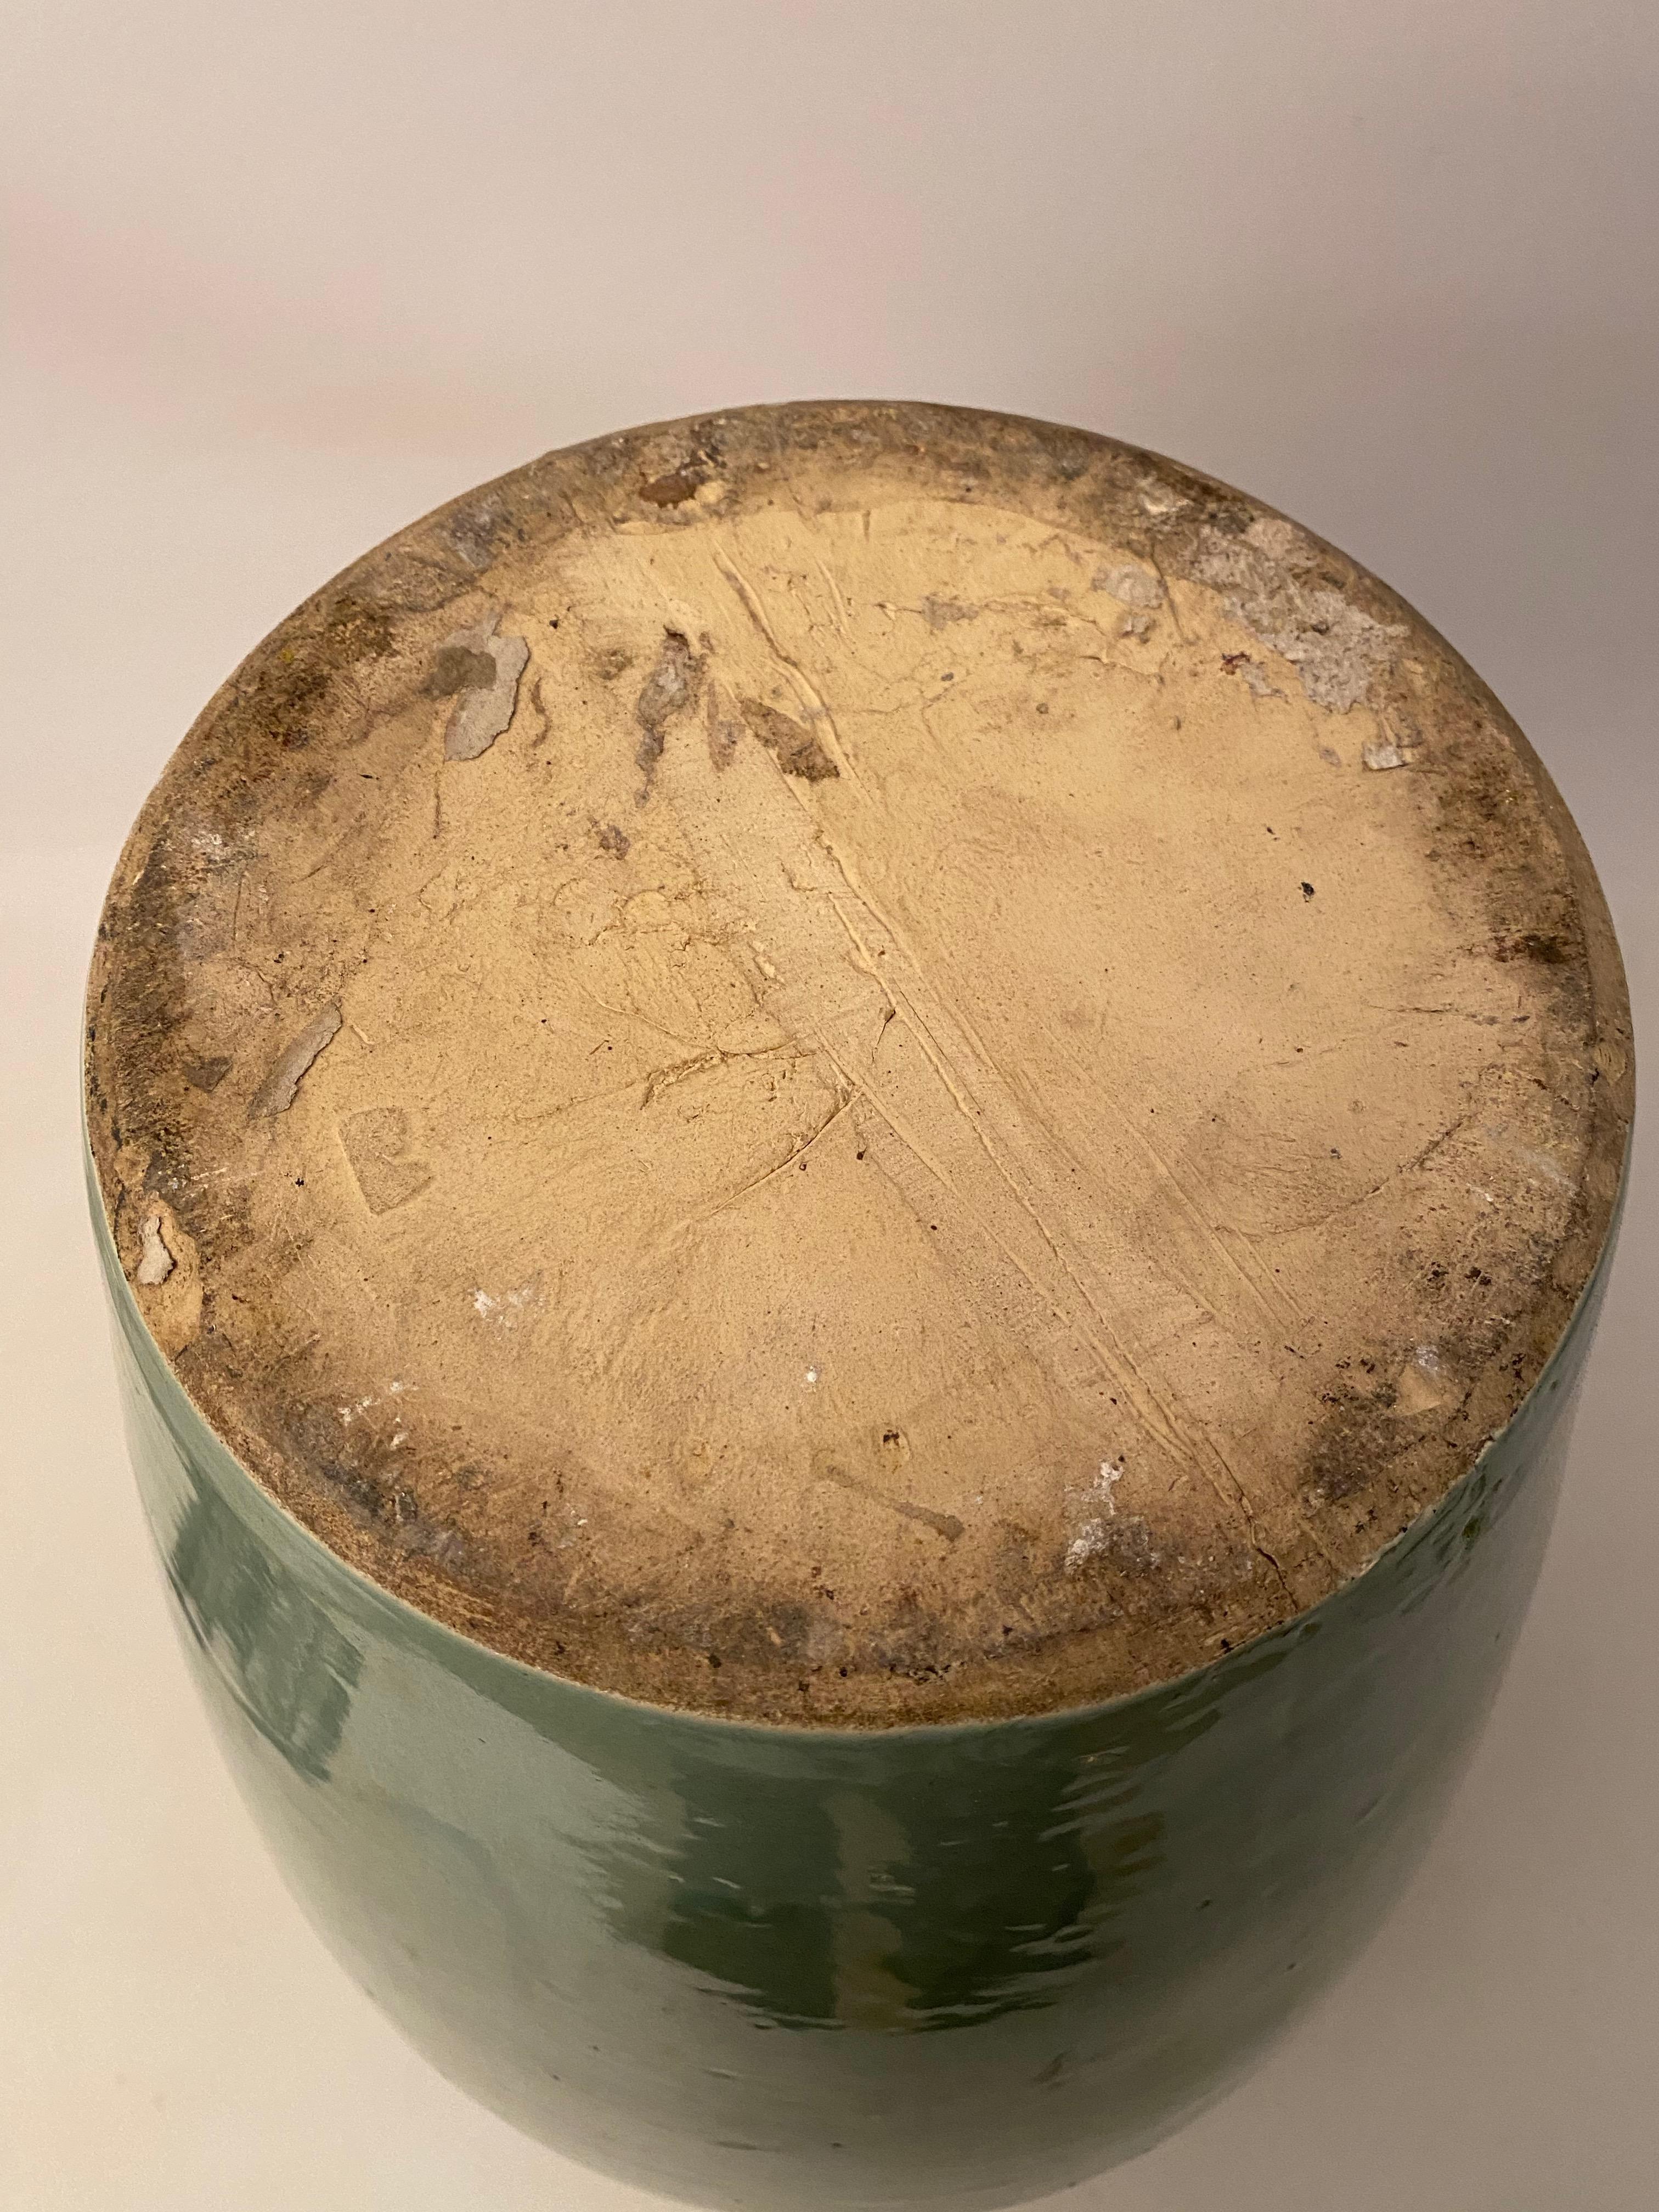 Zanesville Stoneware Drip Glaze Oil Jar 2